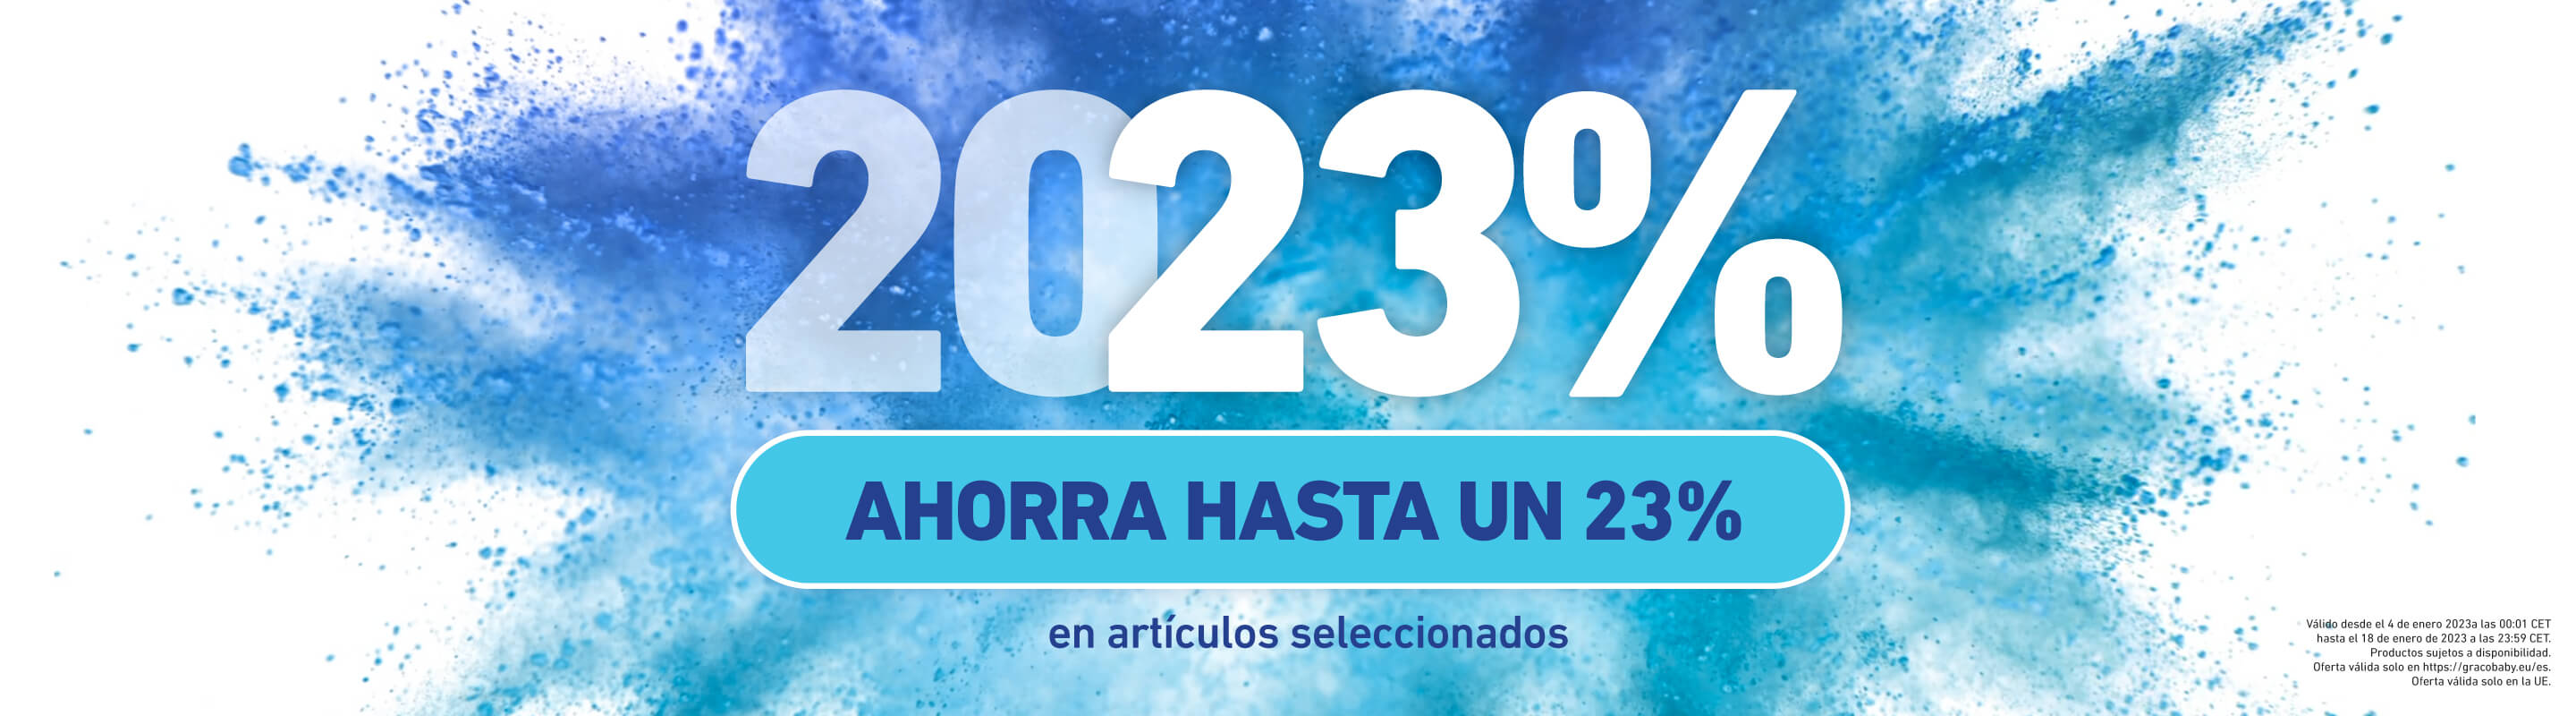 Imagen con explosión de polvo azul y texto que dice "ahorra hasta un 23 %".